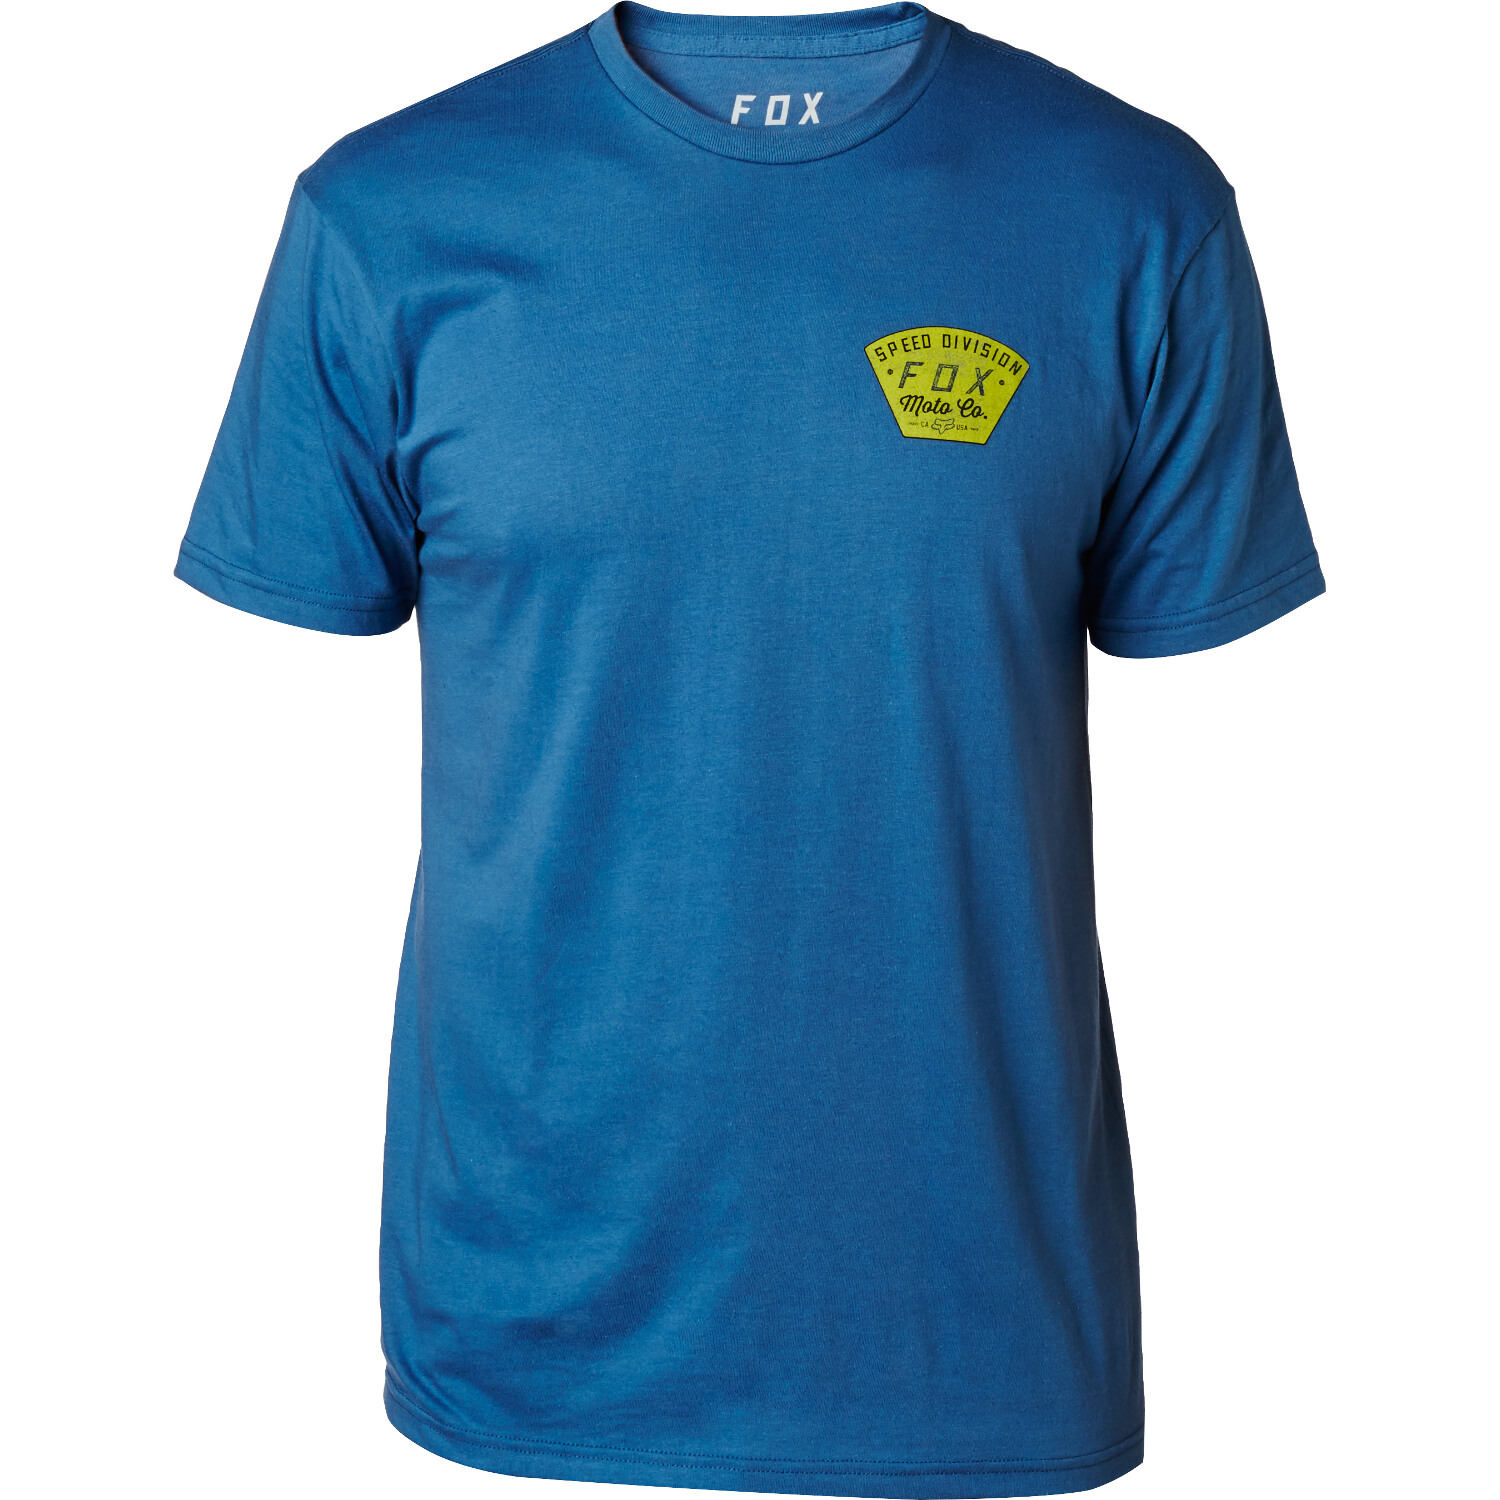 Fox T-Shirt Tech Seek And Construct Dusty Blue